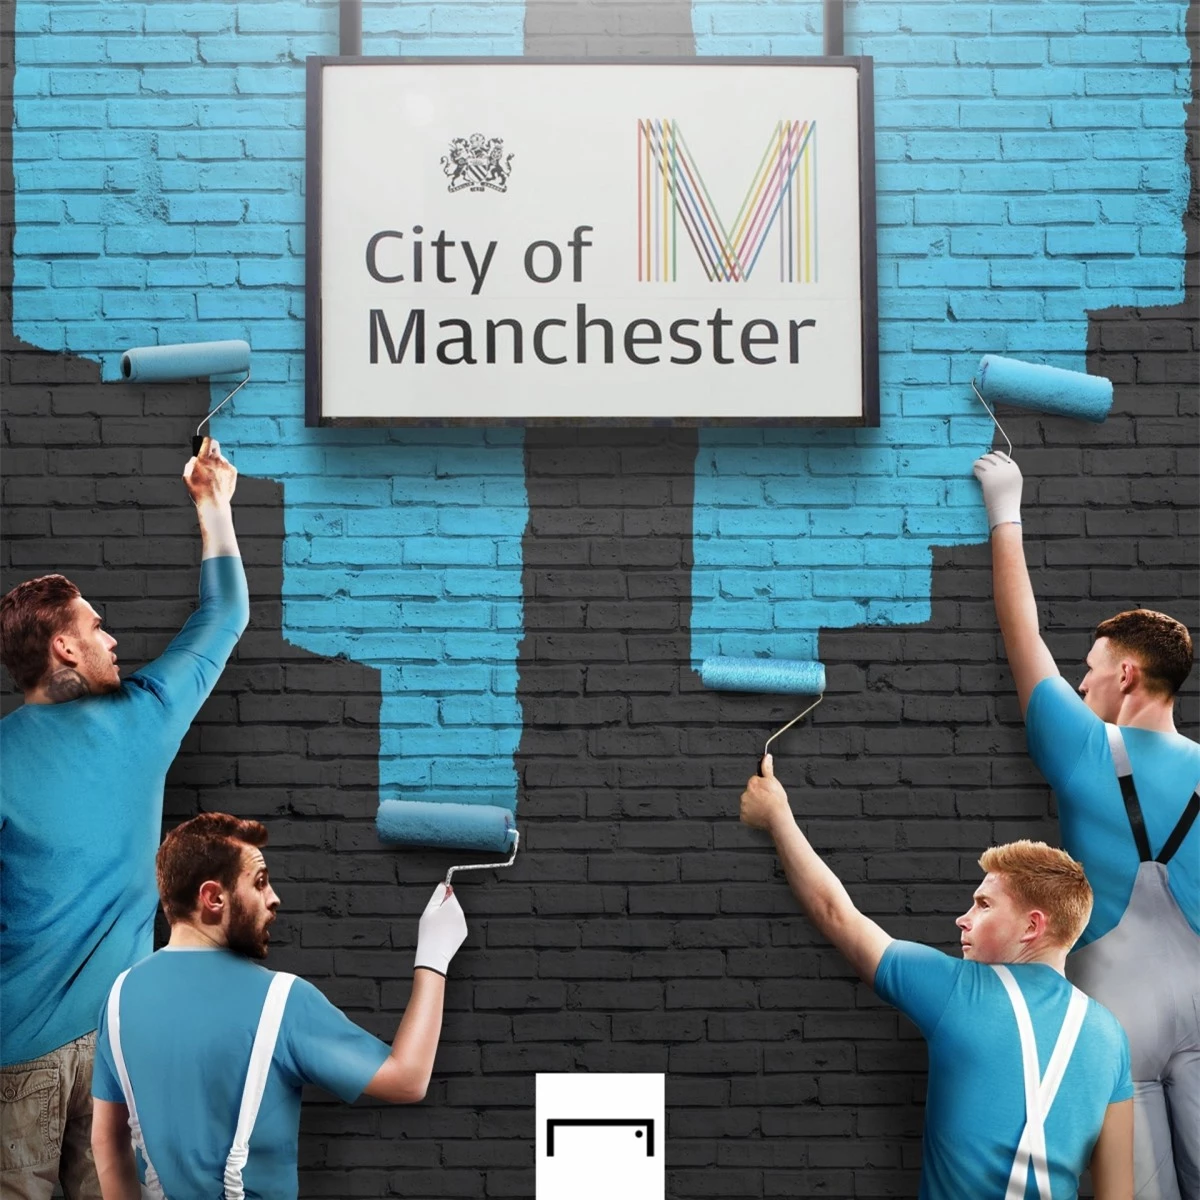 Man City "nhuộm xanh" thành Manchester. (Ảnh: Goal)